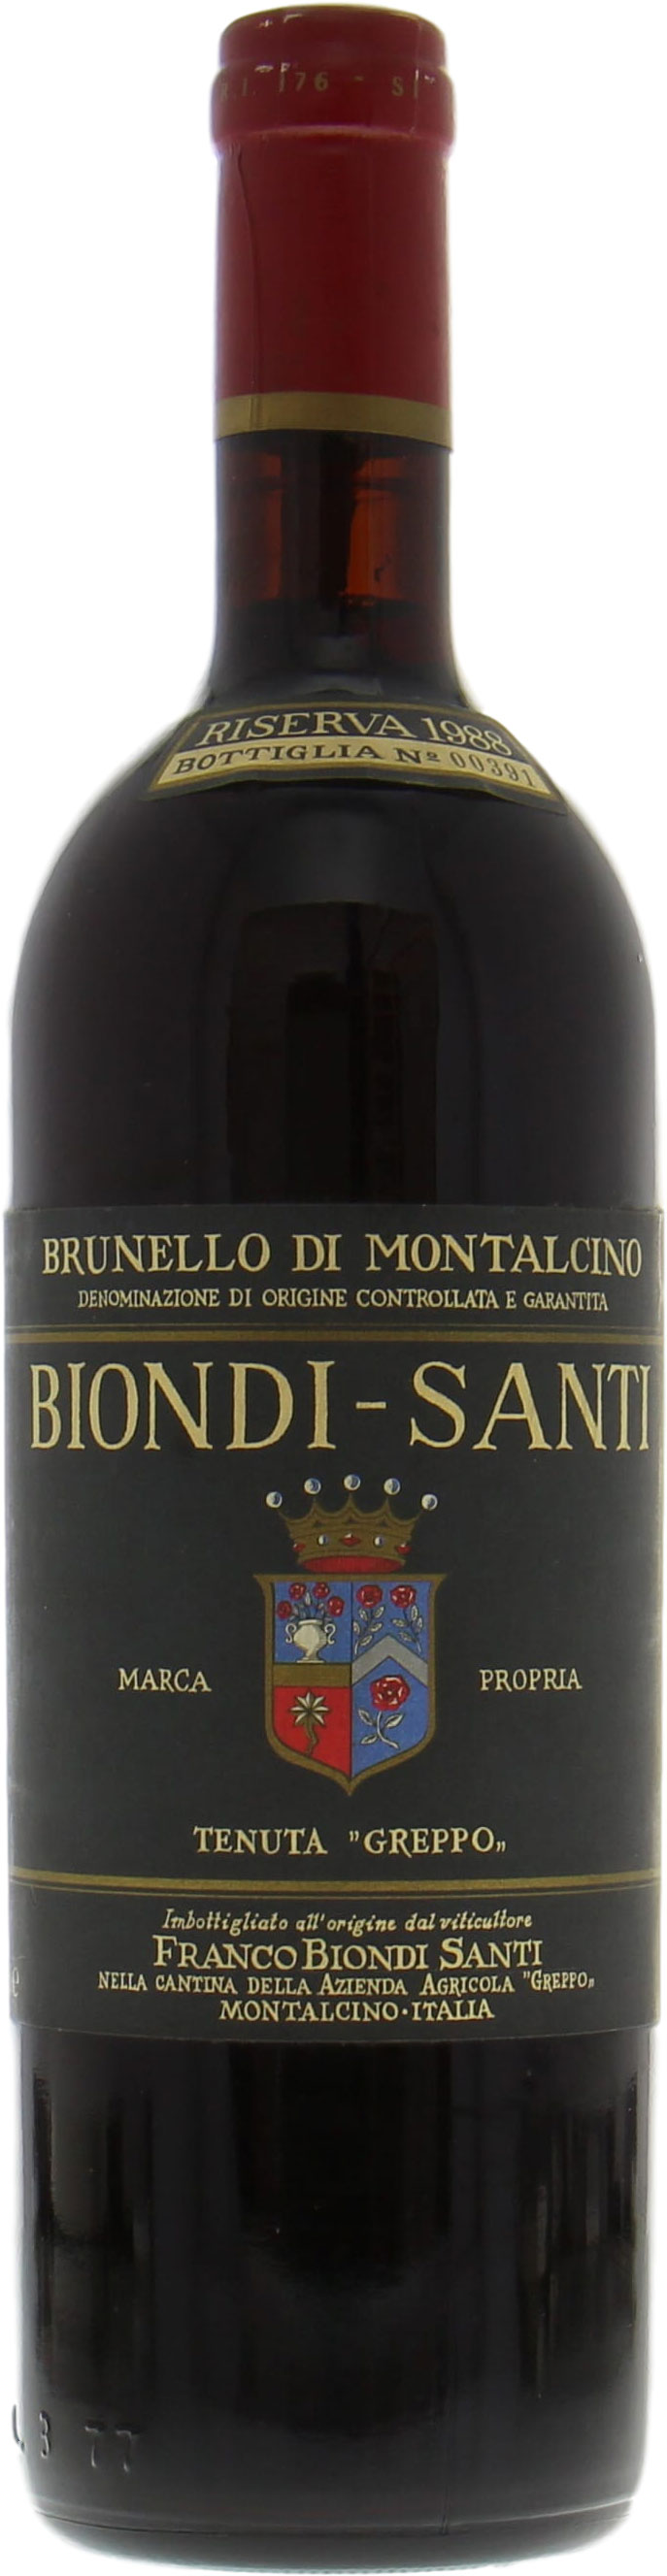 Biondi Santi - Brunello Riserva Greppo 1988 Perfect